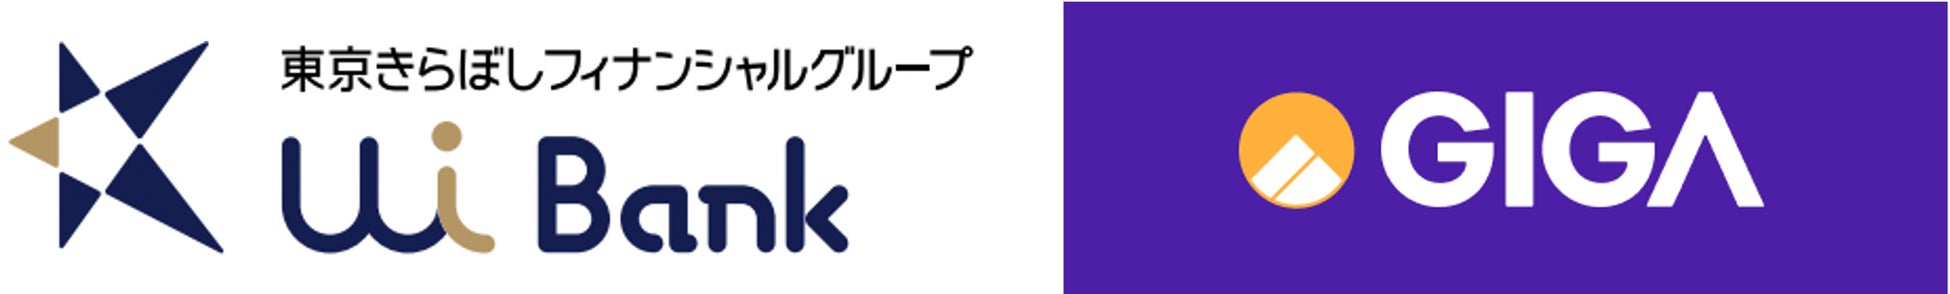 多言語モバイル金融サービス「GIG-A（ギガー）」東京きらぼしフィナンシャルグループのUI銀行とAPI連携で提携